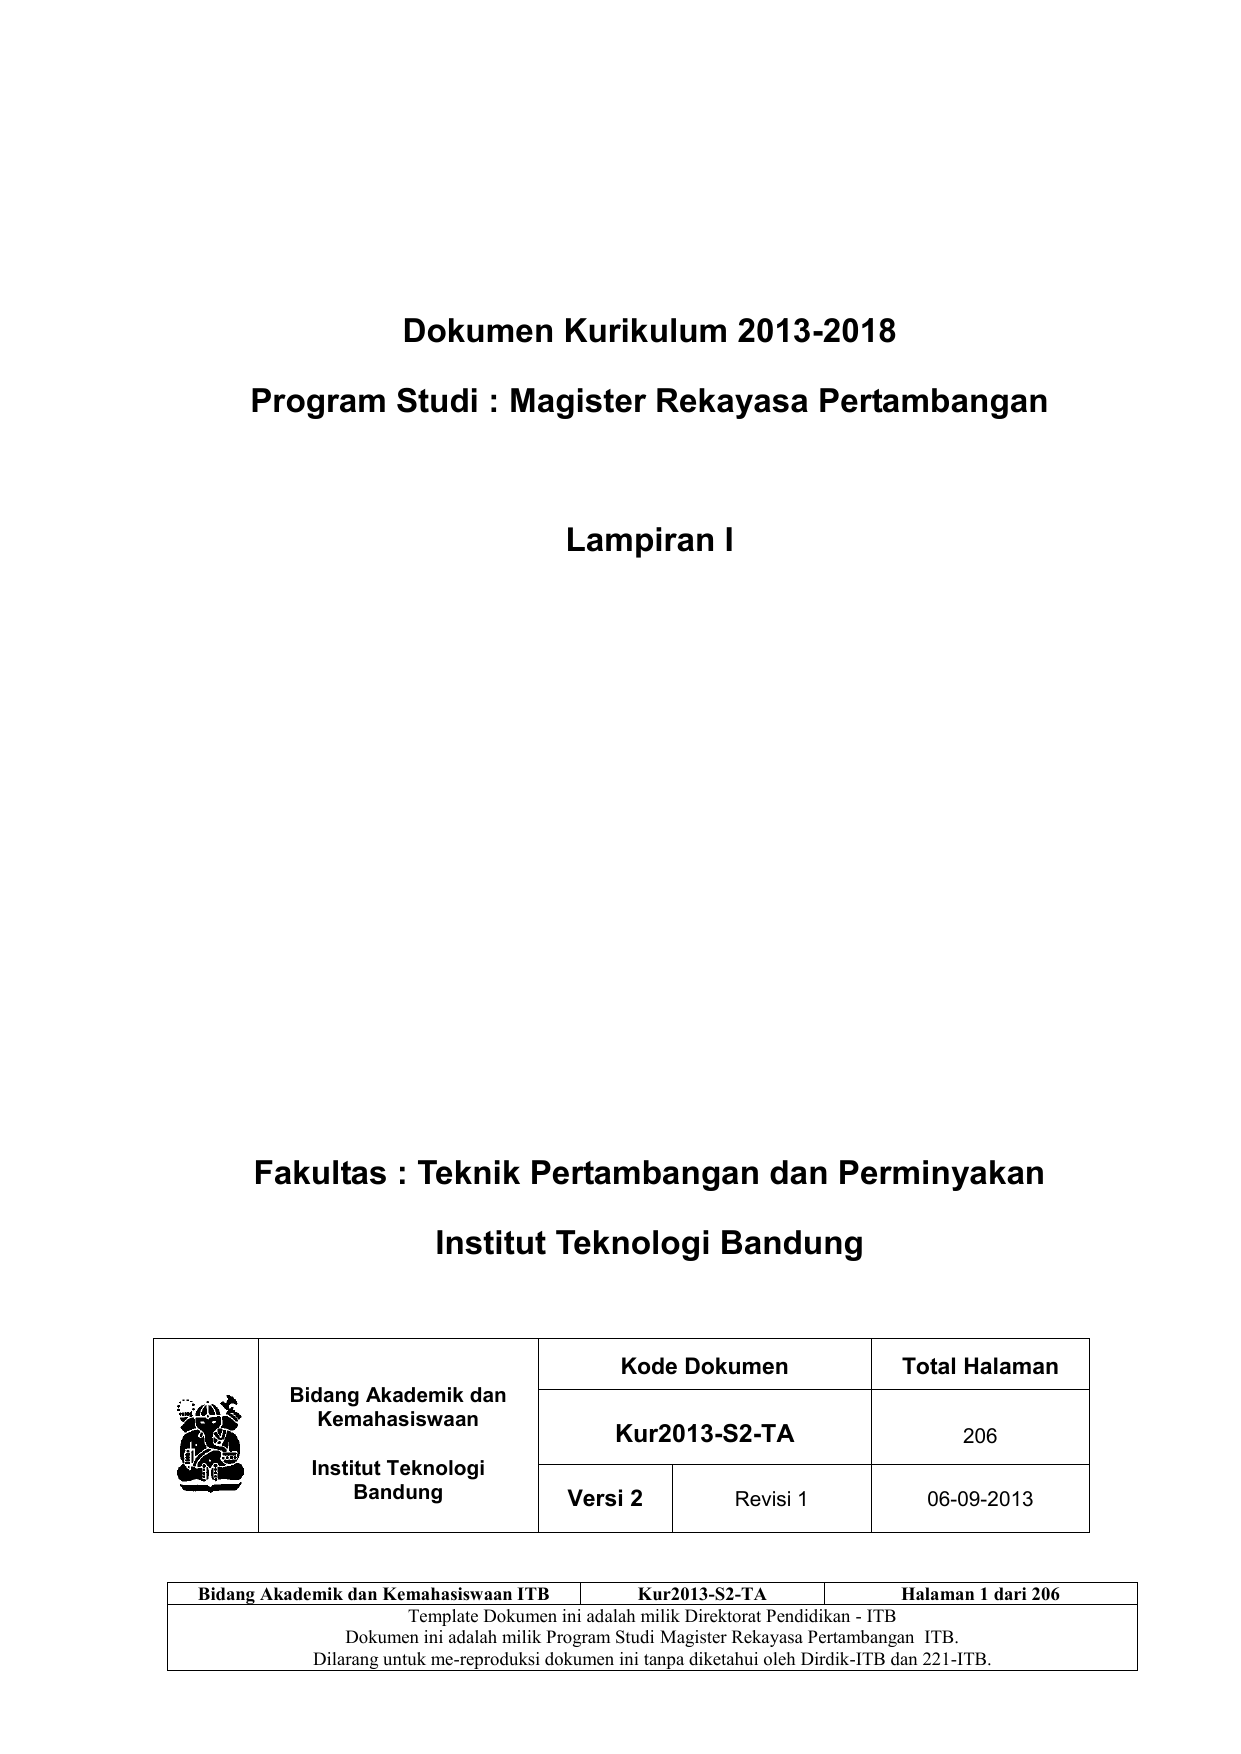 Dokumen Kurikulum 2013 2018 Program Studi Magister Rekayasa Pertambangan Lampiran I Fakultas Teknik Pertambangan dan Perminyakan Institut Teknologi